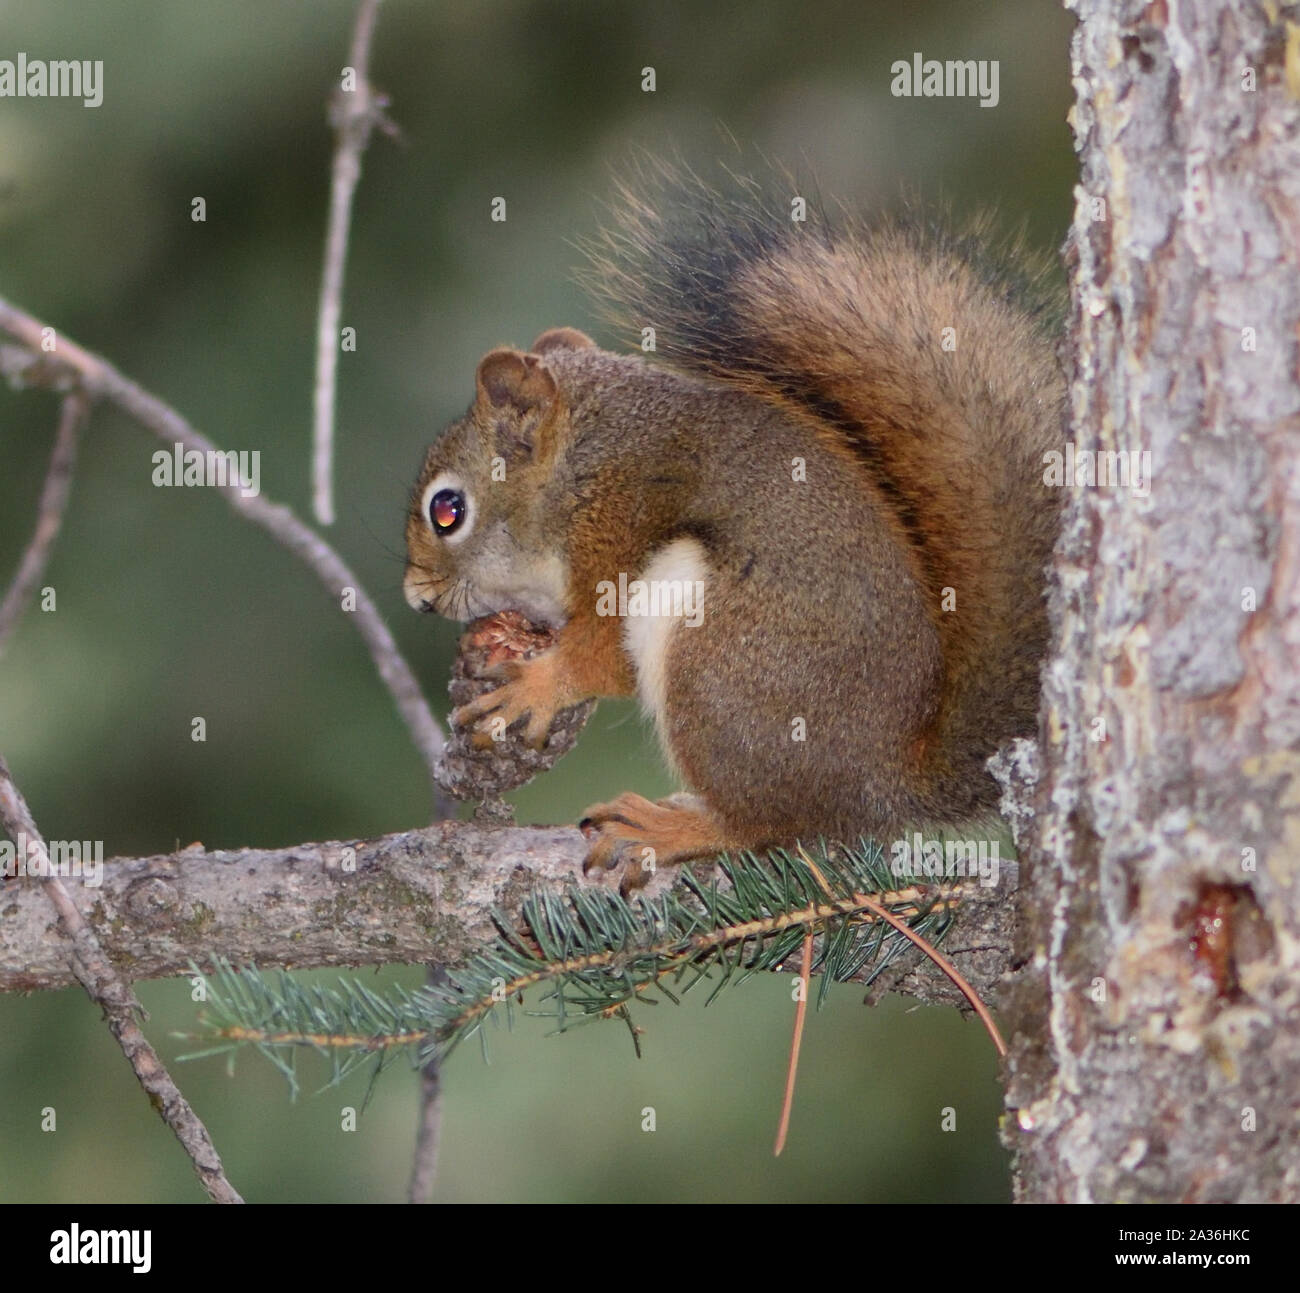 Uno scoiattolo rosso americano (Tamiasciurus hudsonicus) rompe un cono di pino per ottenere ai semi. Banff, Alberta, Canada. Foto Stock